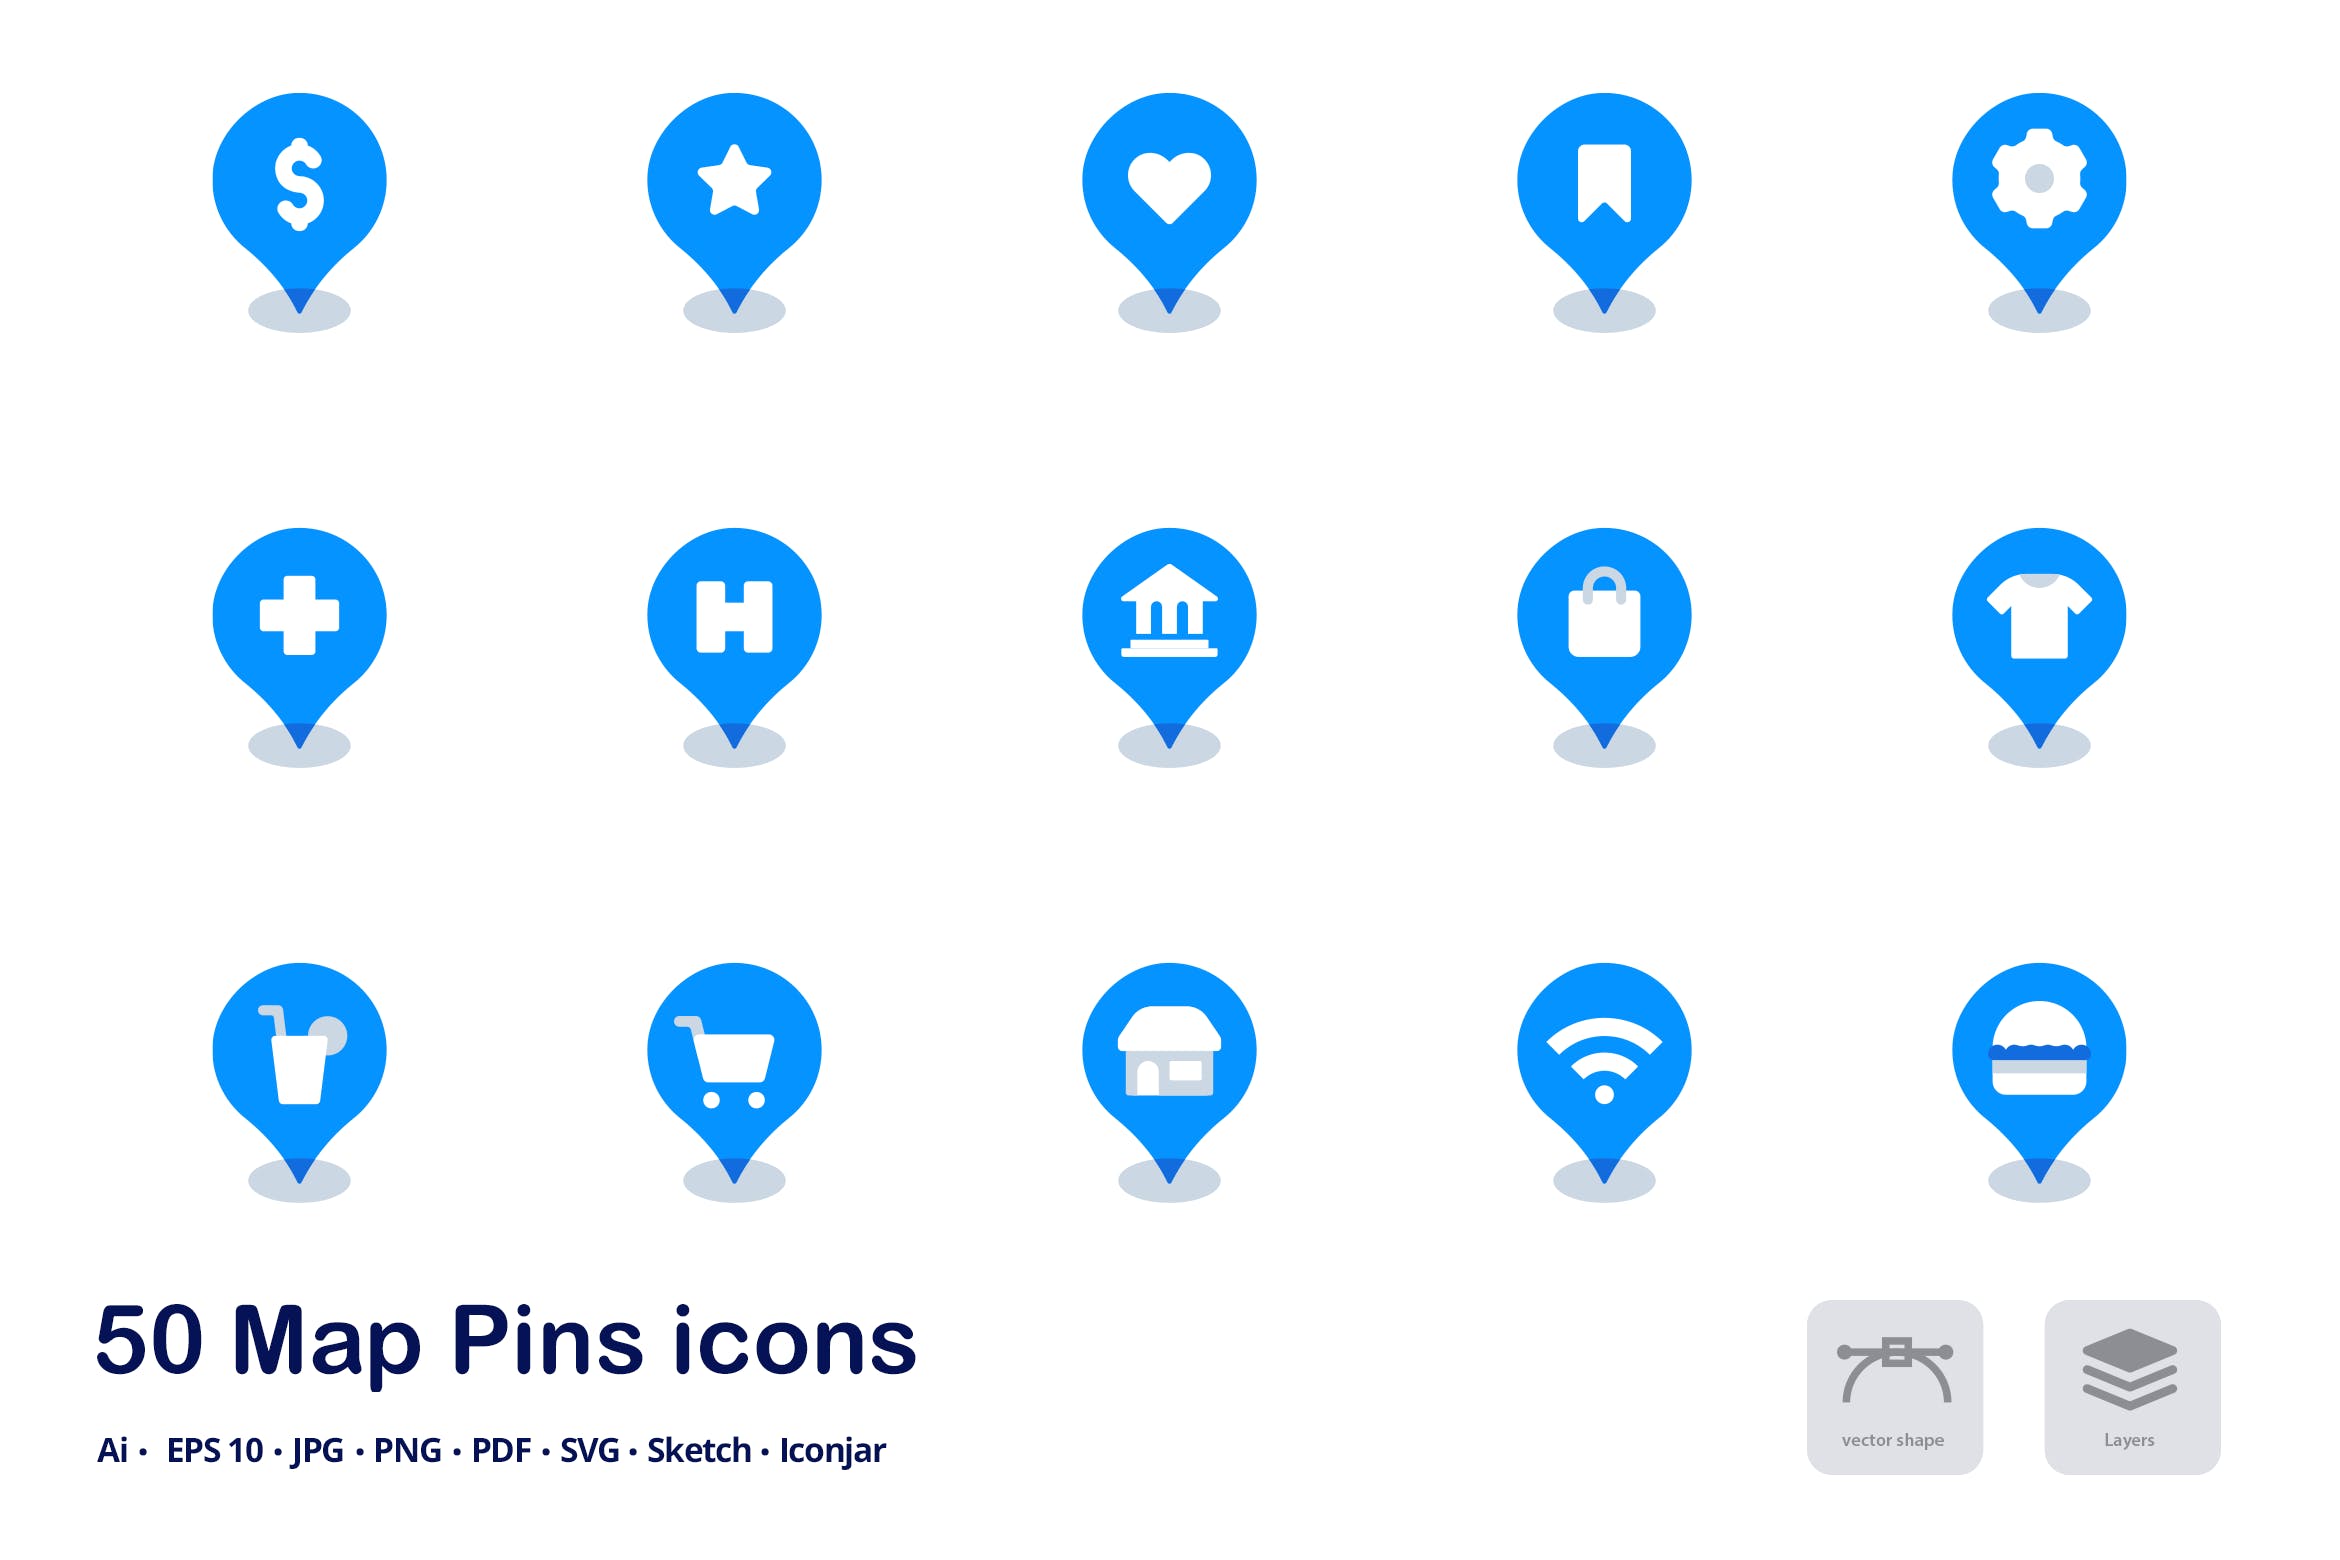 地图图钉双色调扁平化矢量图标 Map Pins Accent Duo Tone Flat Icons插图